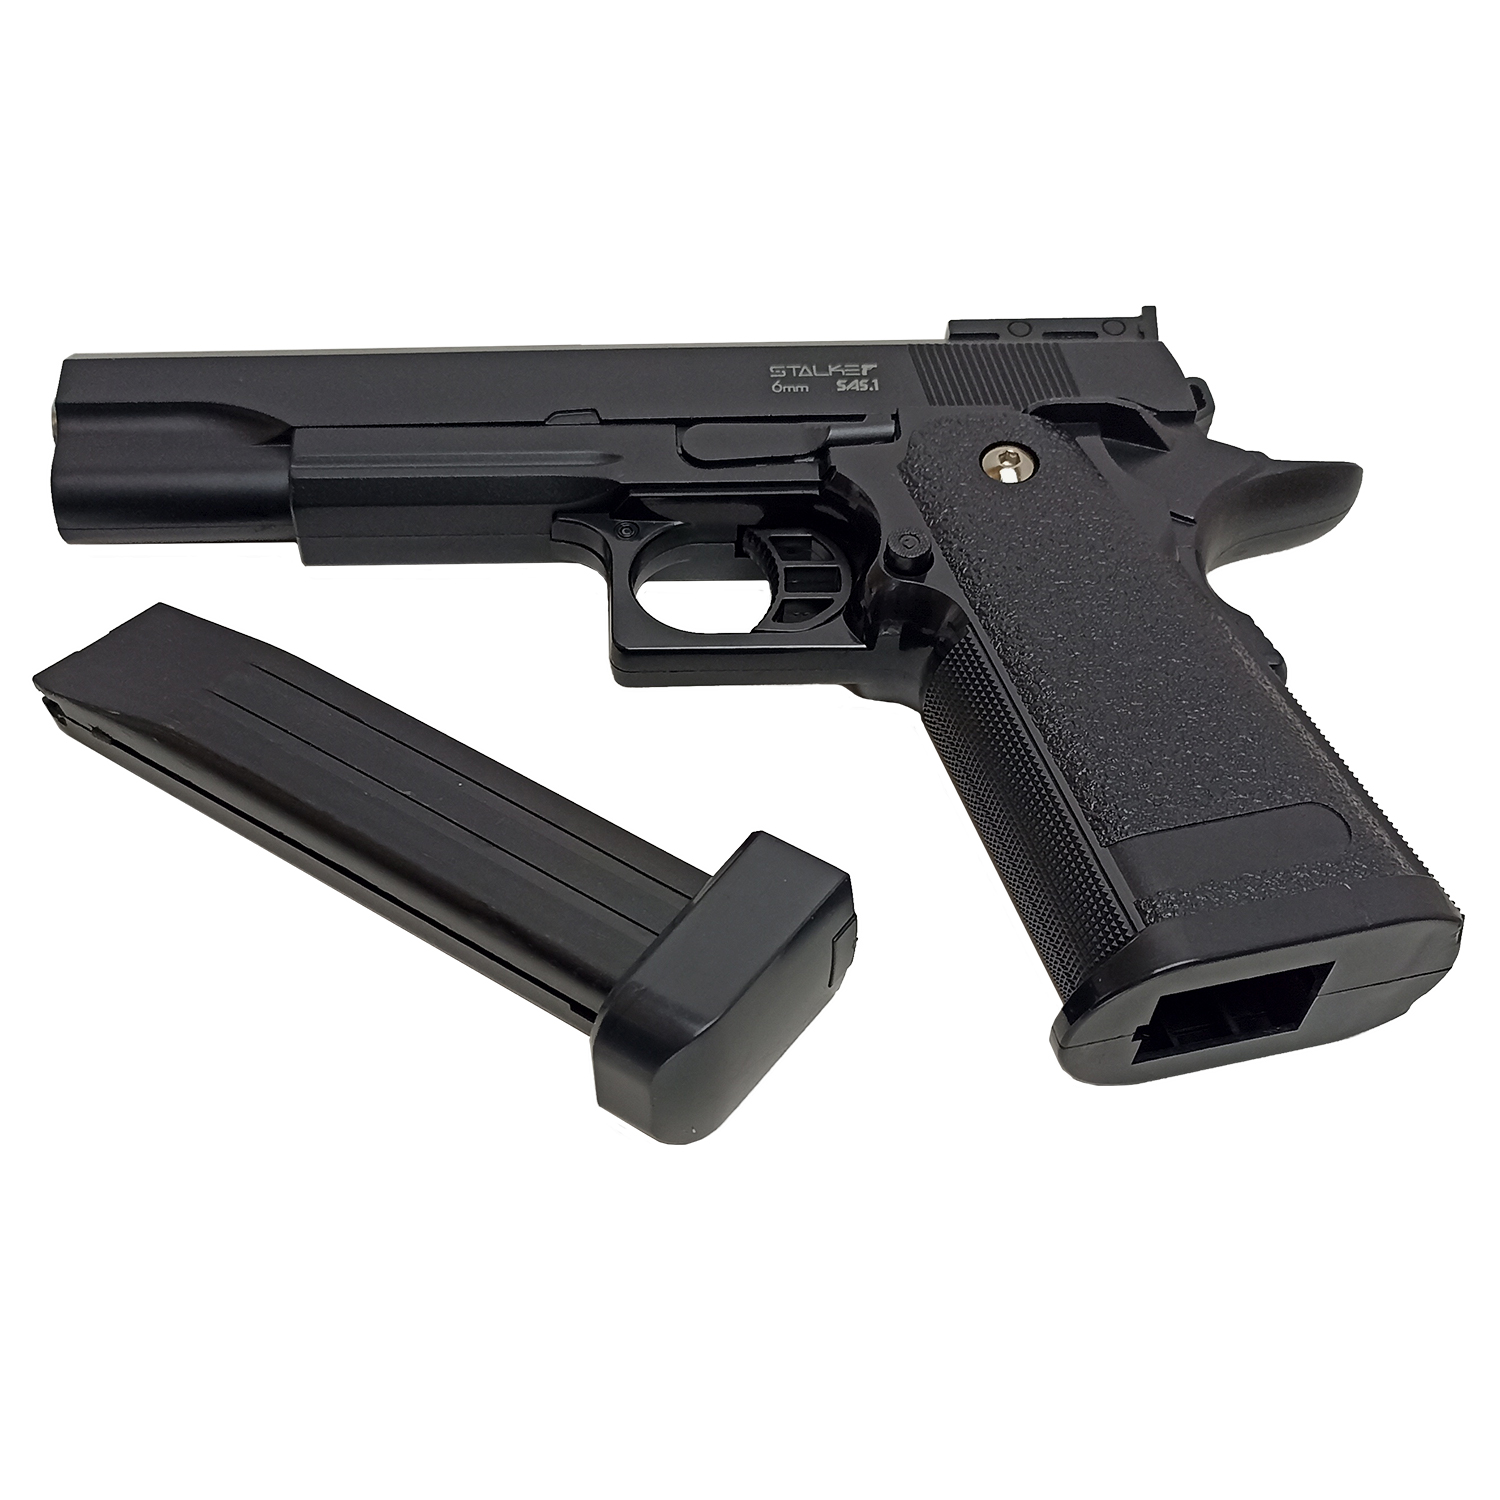 Пистолет страйкбольный Stalker SA5.1 Spring (Hi-Capa 5.1), 6 мм